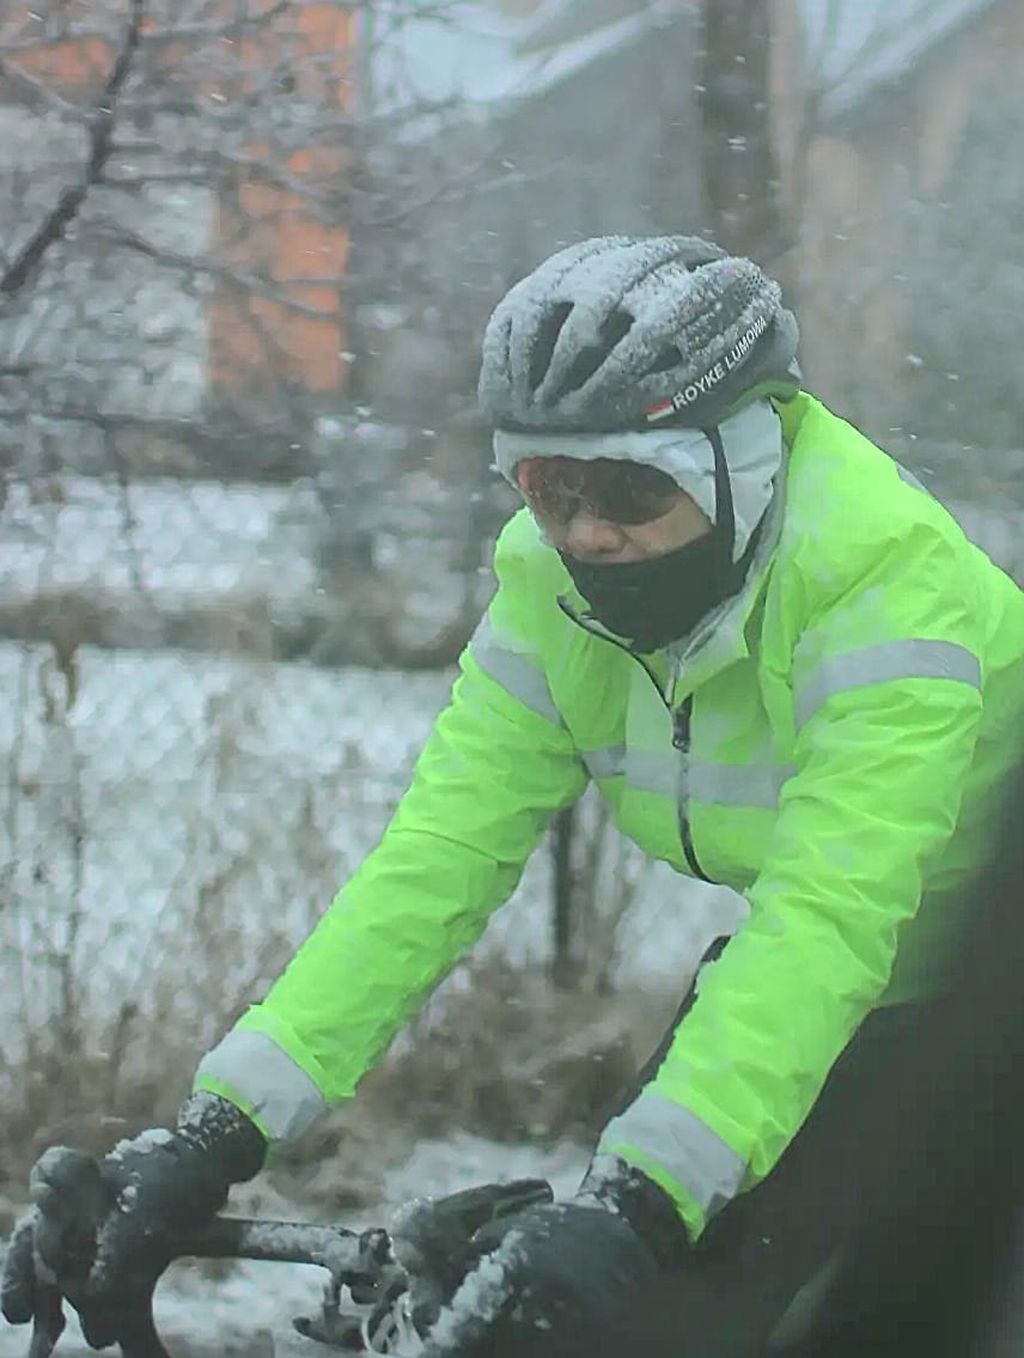 Salju menempel pada pakaian dan perlengkapan yang dipakai Royke Lumowa saat bersepeda dari Namastovo, di Kroasia, ke Polandia pada 1 Januari 2024. Salju tampak menempel pada helm sepeda dan jaket.